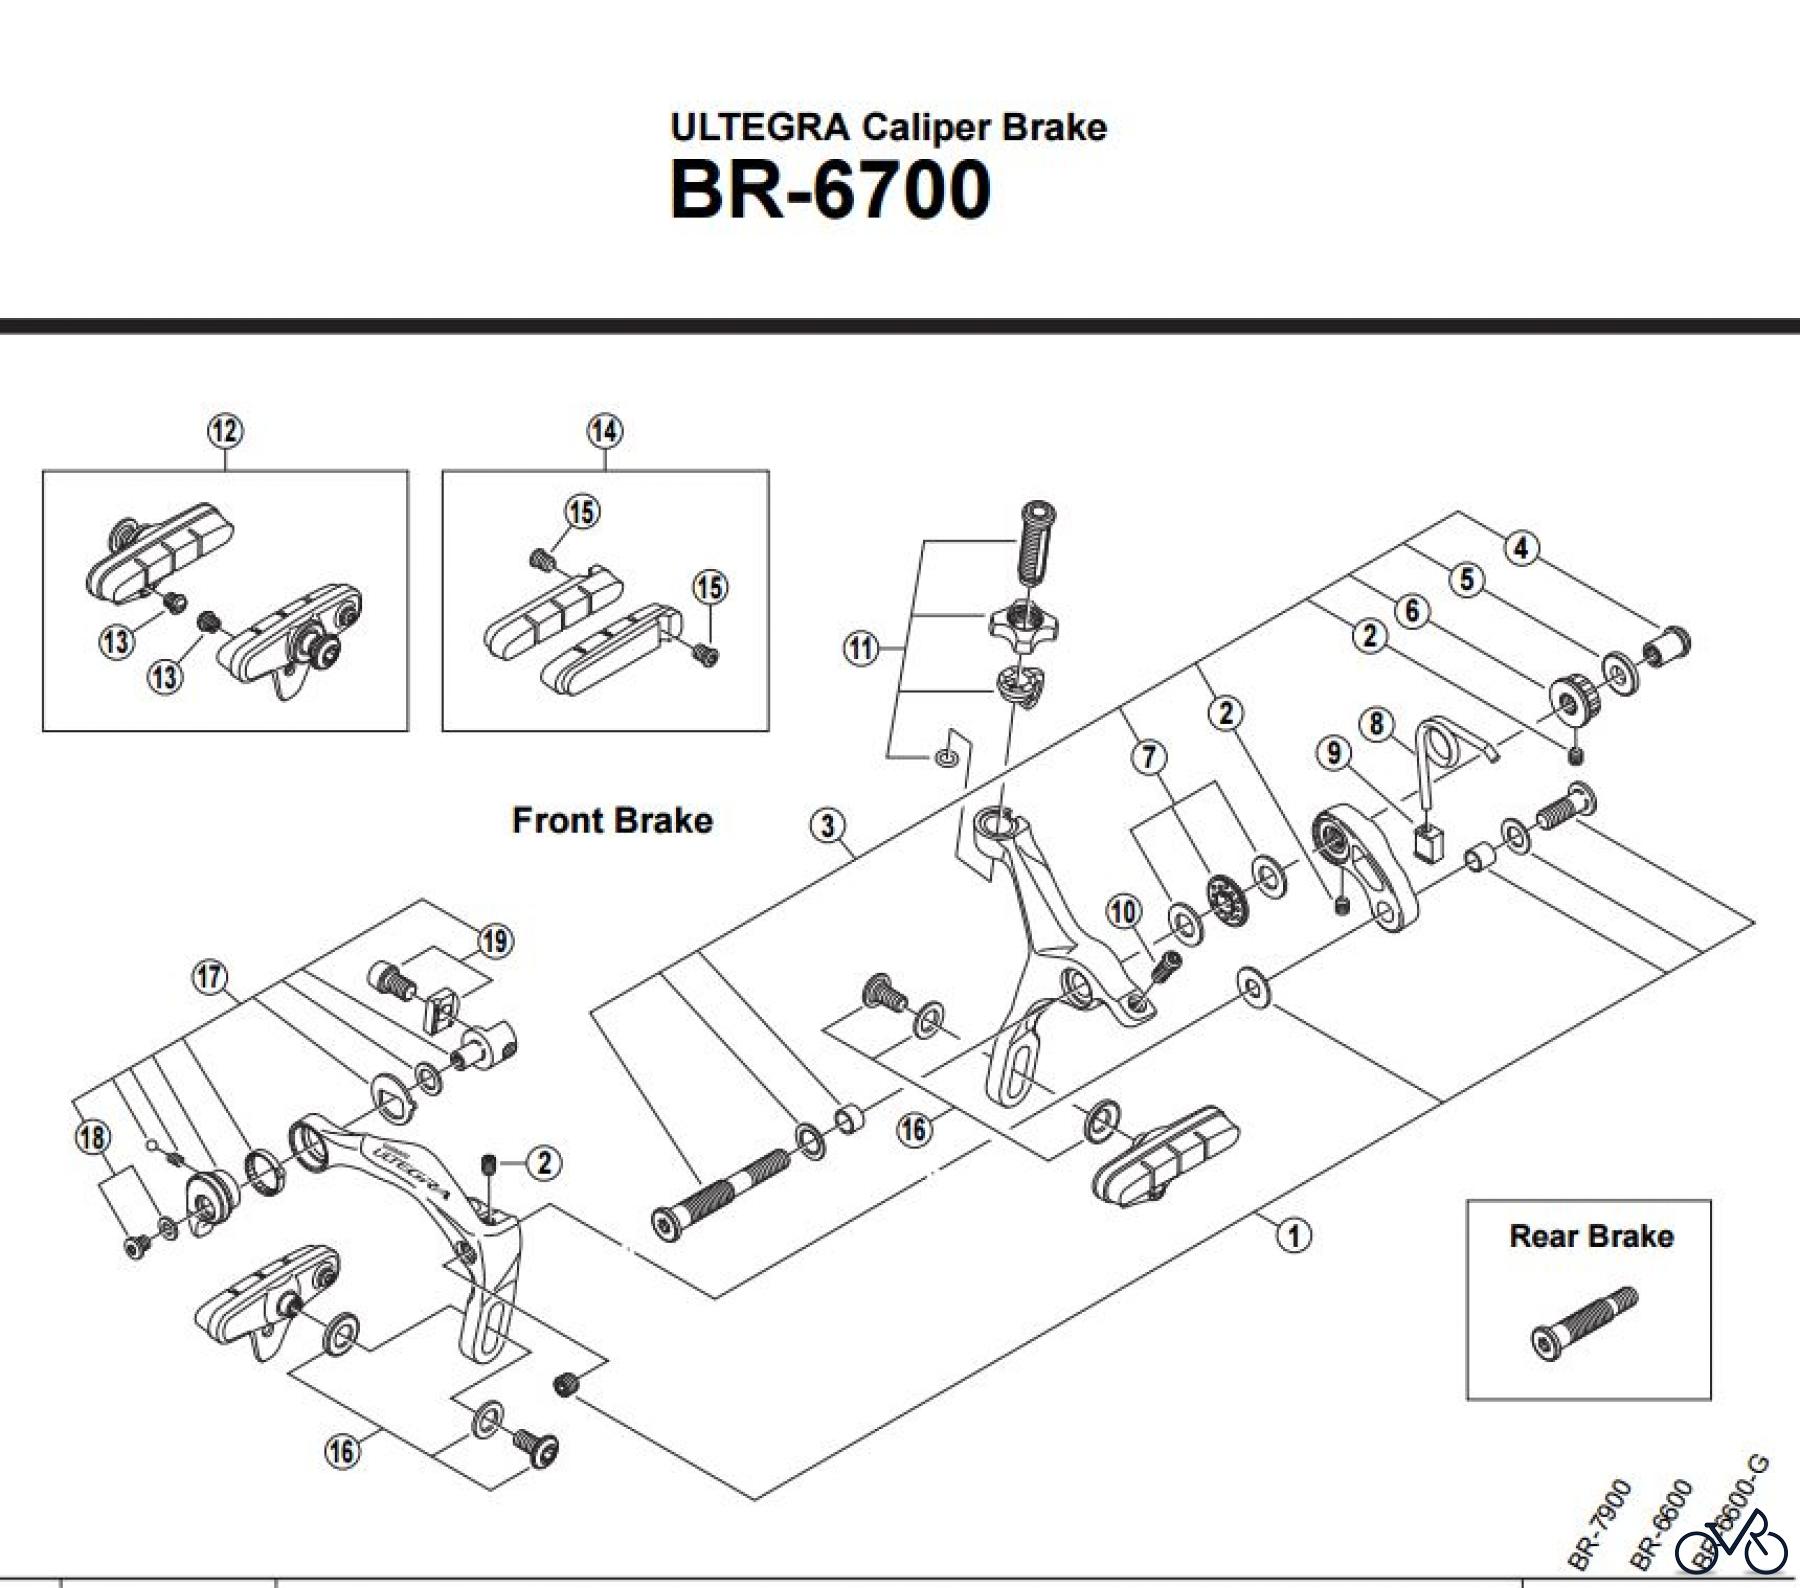  Shimano BR Brake - Bremse BR-6700 -2921 Ultegra Caliper Brake